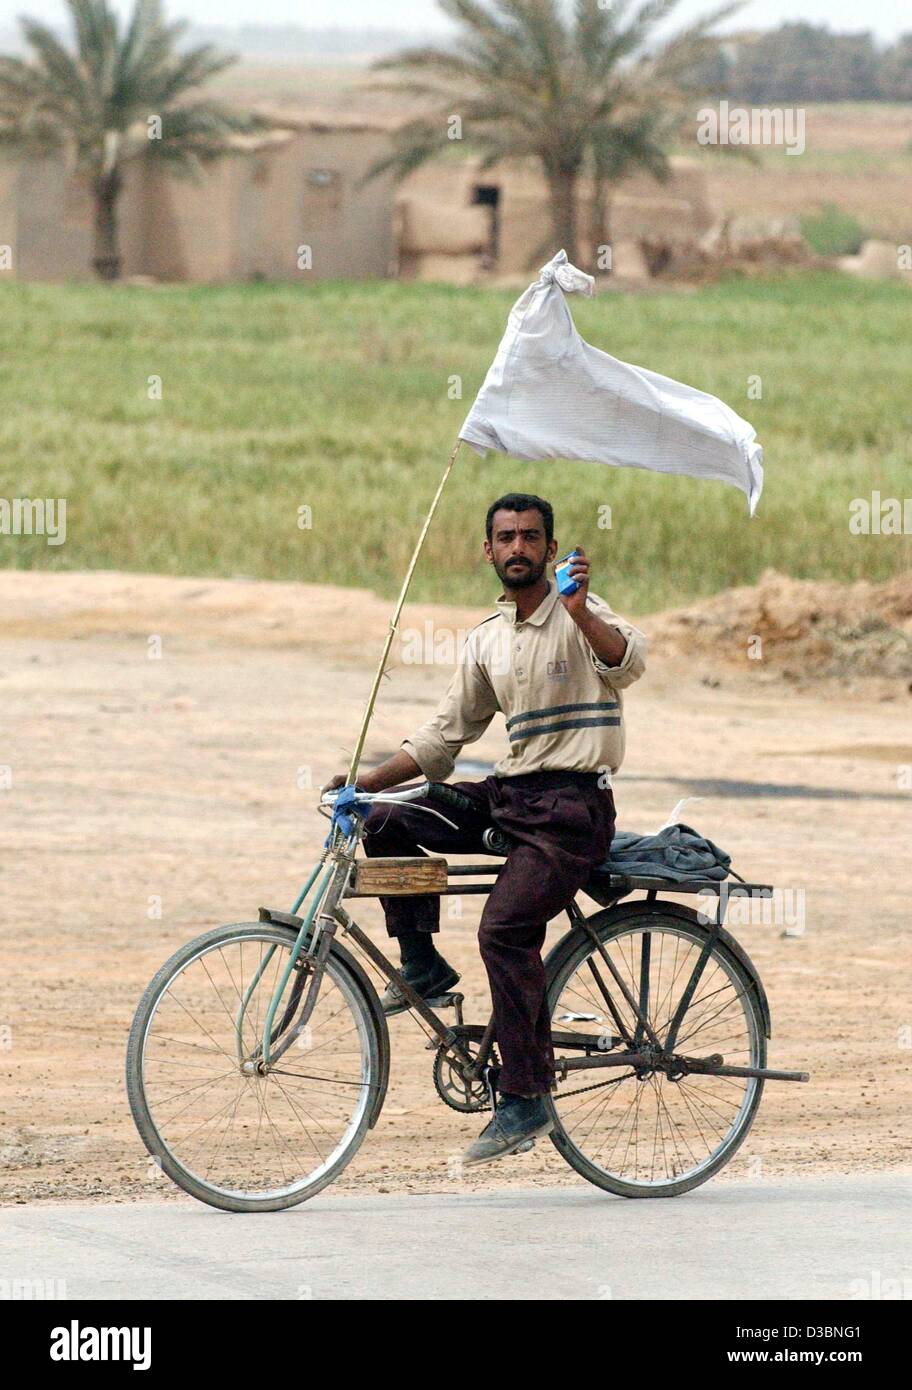 (Dpa) - Zyklen ein irakischen Zivilisten mit einer weißen Fahne in südlicher Richtung in der Nähe von Al Aziziyan ca. 40 km südlich von Bagdad, Irak, 4. April 2003. Die Koalitionskräfte sind in Richtung der irakischen Hauptstadt, während der Luftangriffe auf die Hauptstadt und anderen Städten weiter. Stockfoto